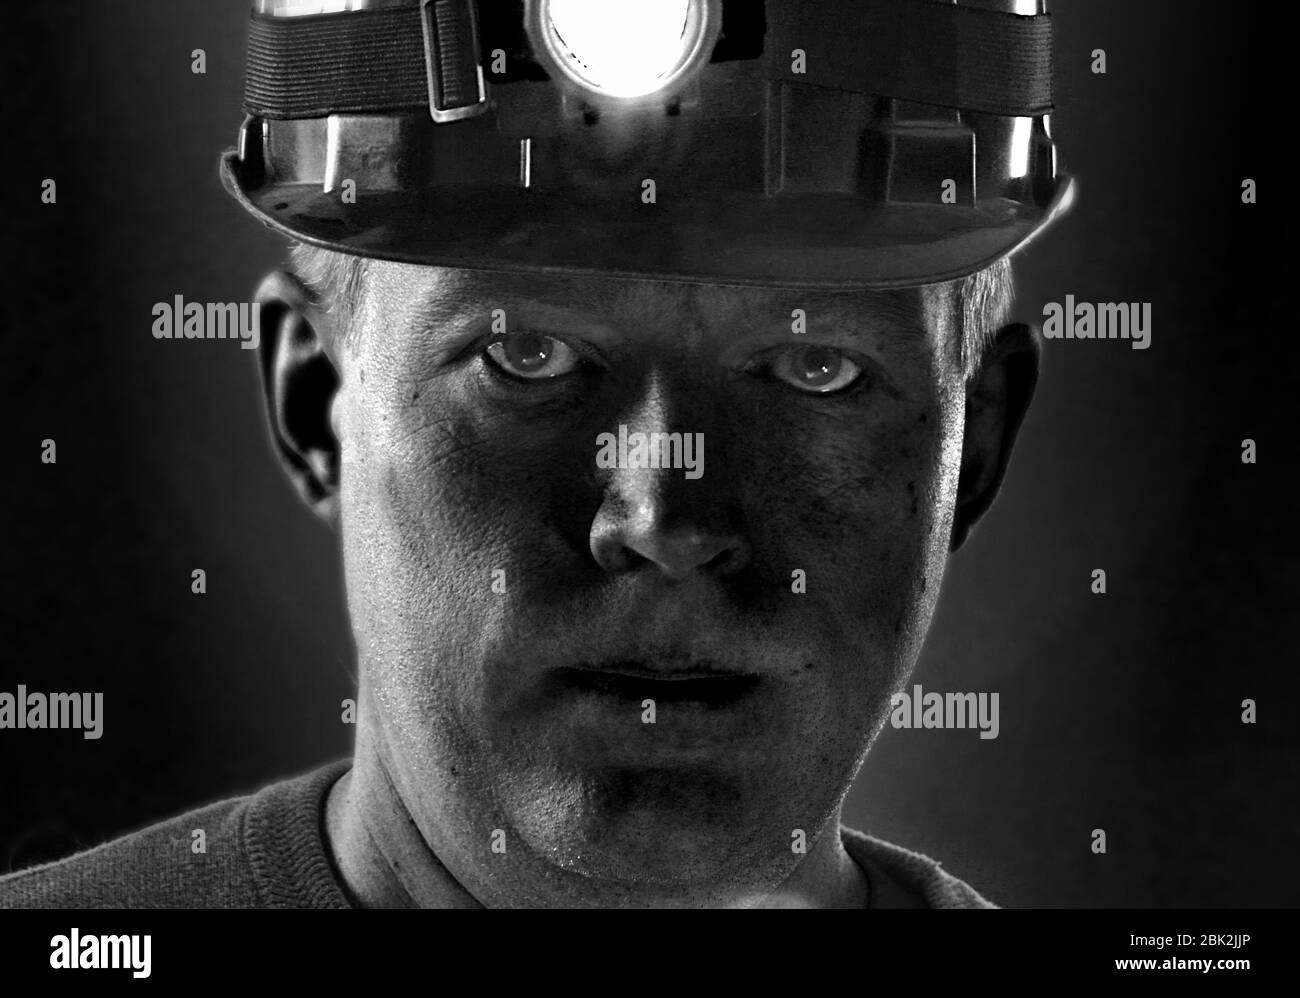 Schmutziges Gesicht des Kohlemeiters im Helm mit Licht. Porträt des Minenarbeiters. Mann müde von harter Arbeit. Stockfoto